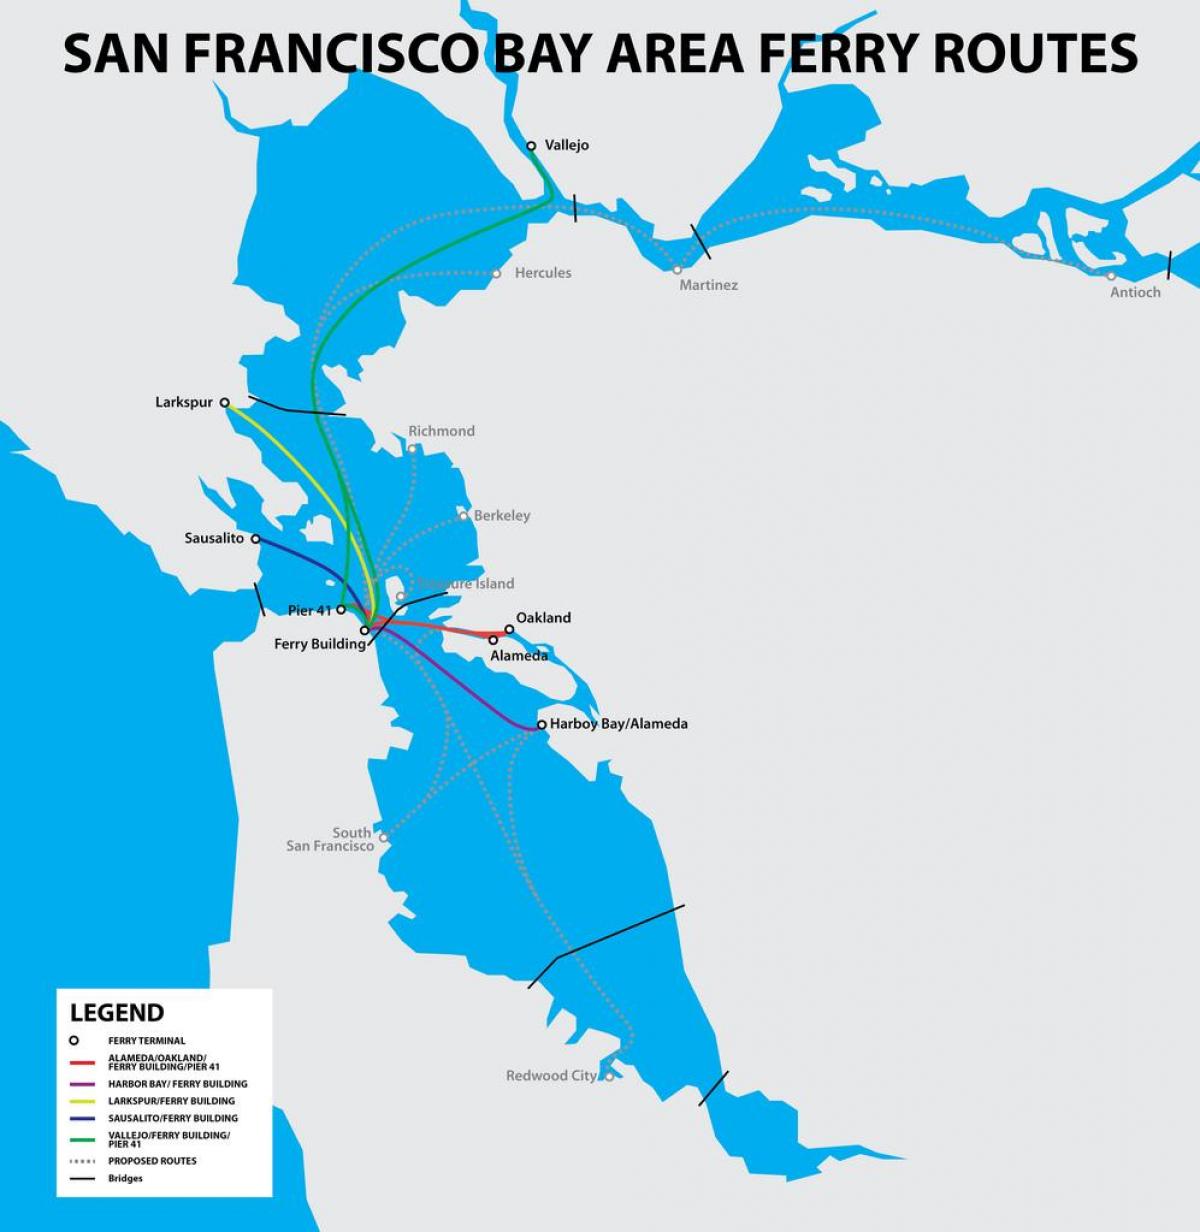 Сан Франциско бэй гарам газрын зураг